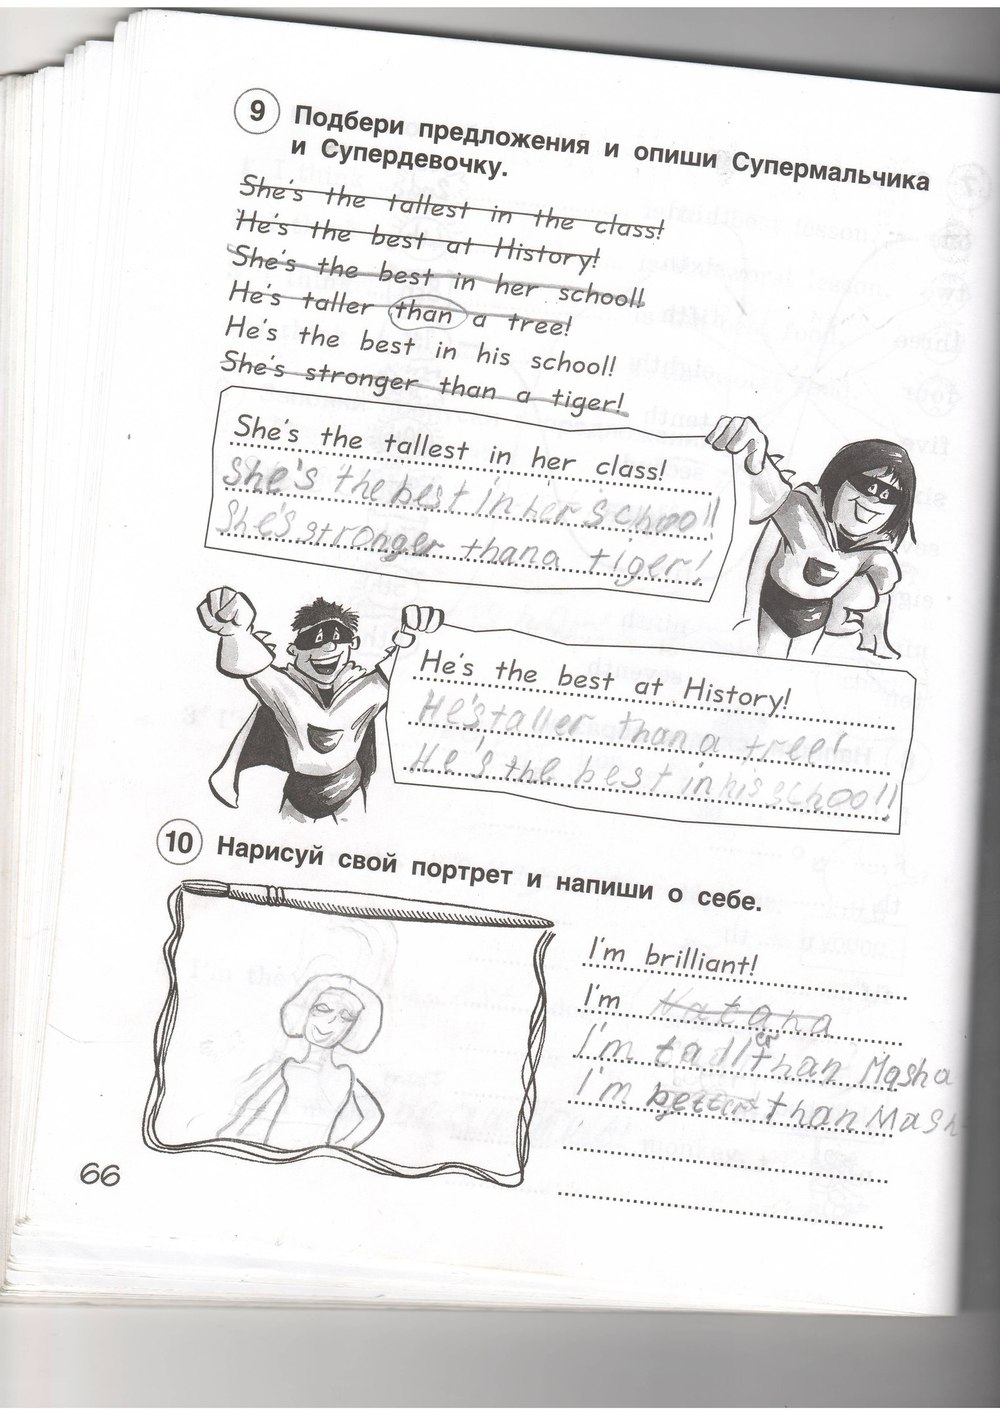 гдз 4 класс рабочая тетрадь страница 66 английский язык Комарова, Ларионова